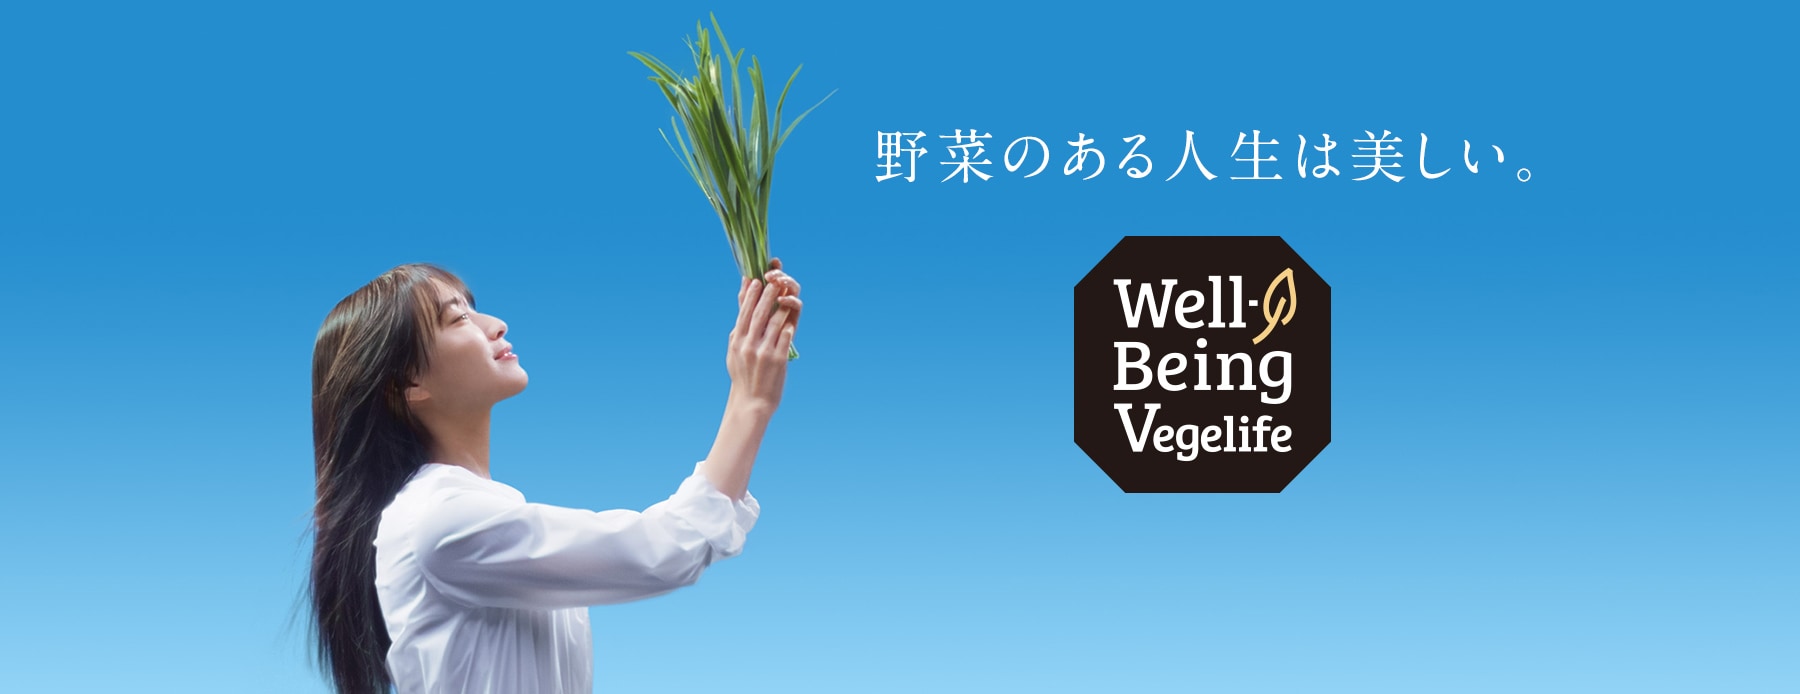 野菜のある人生は美しい。Well-Being Vegelife